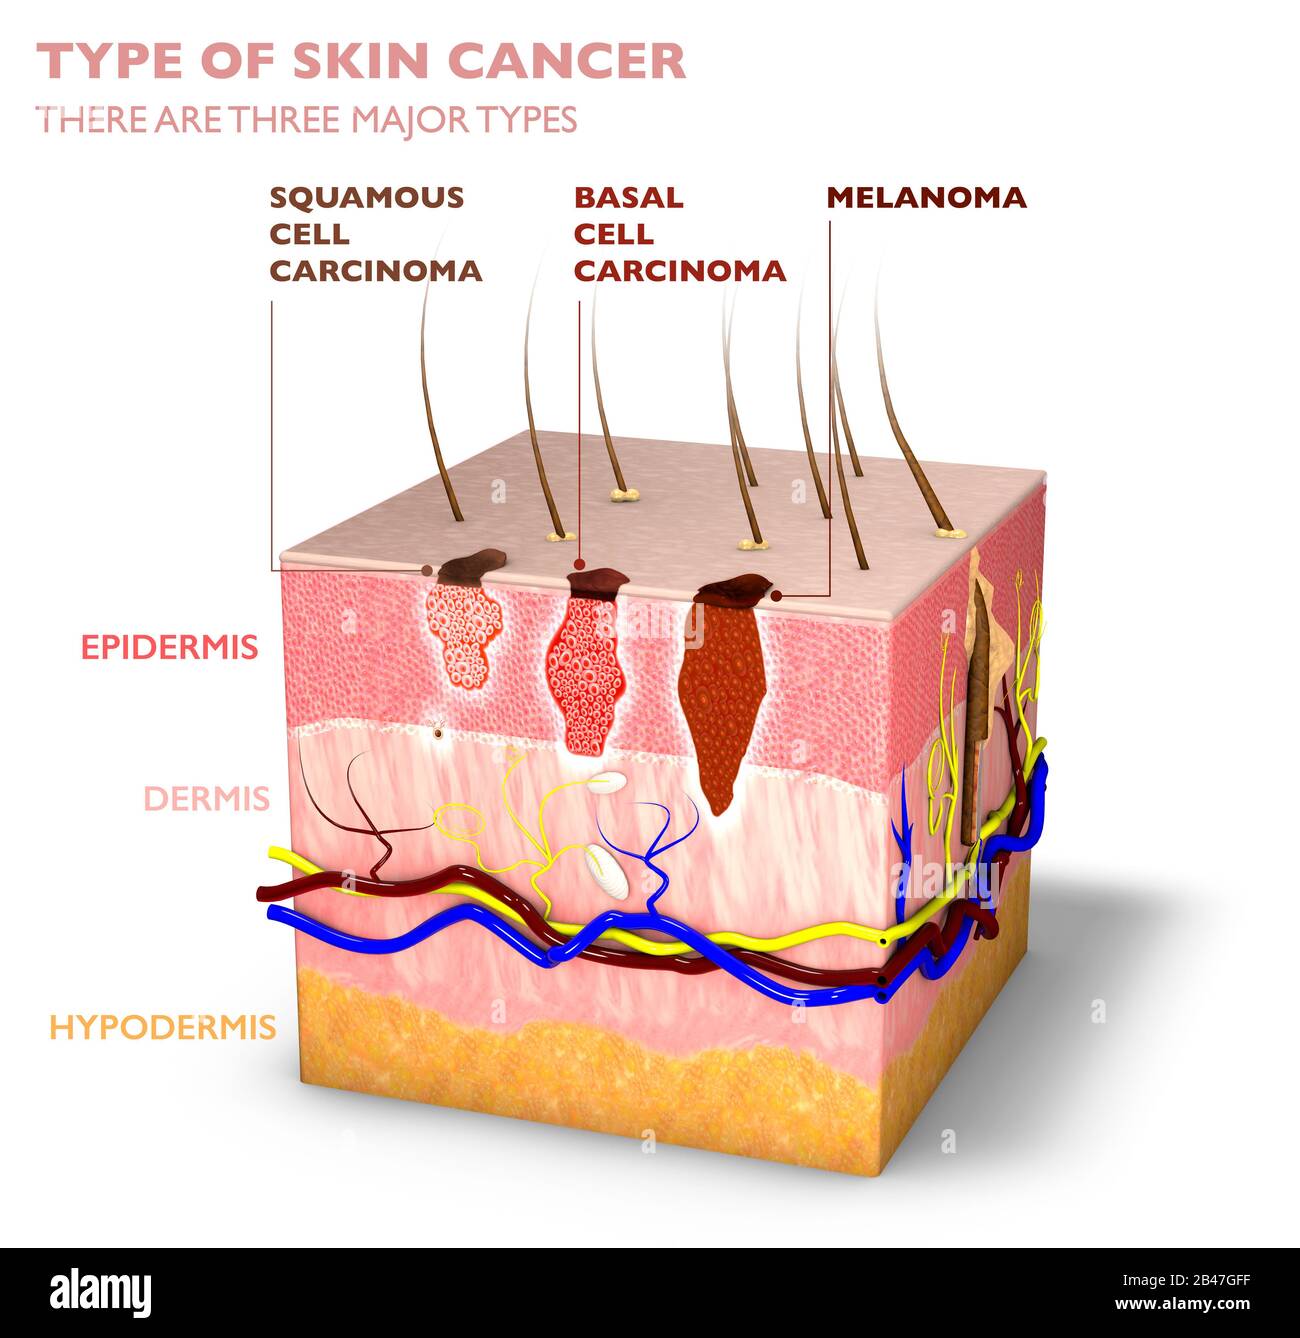 Tumores de piel, lunares y manchas, sección 3d de la capa de piel. Tres tipos de cáncer de piel, carcinoma de células escamosas, carcinoma de células basales, melanoma Foto de stock